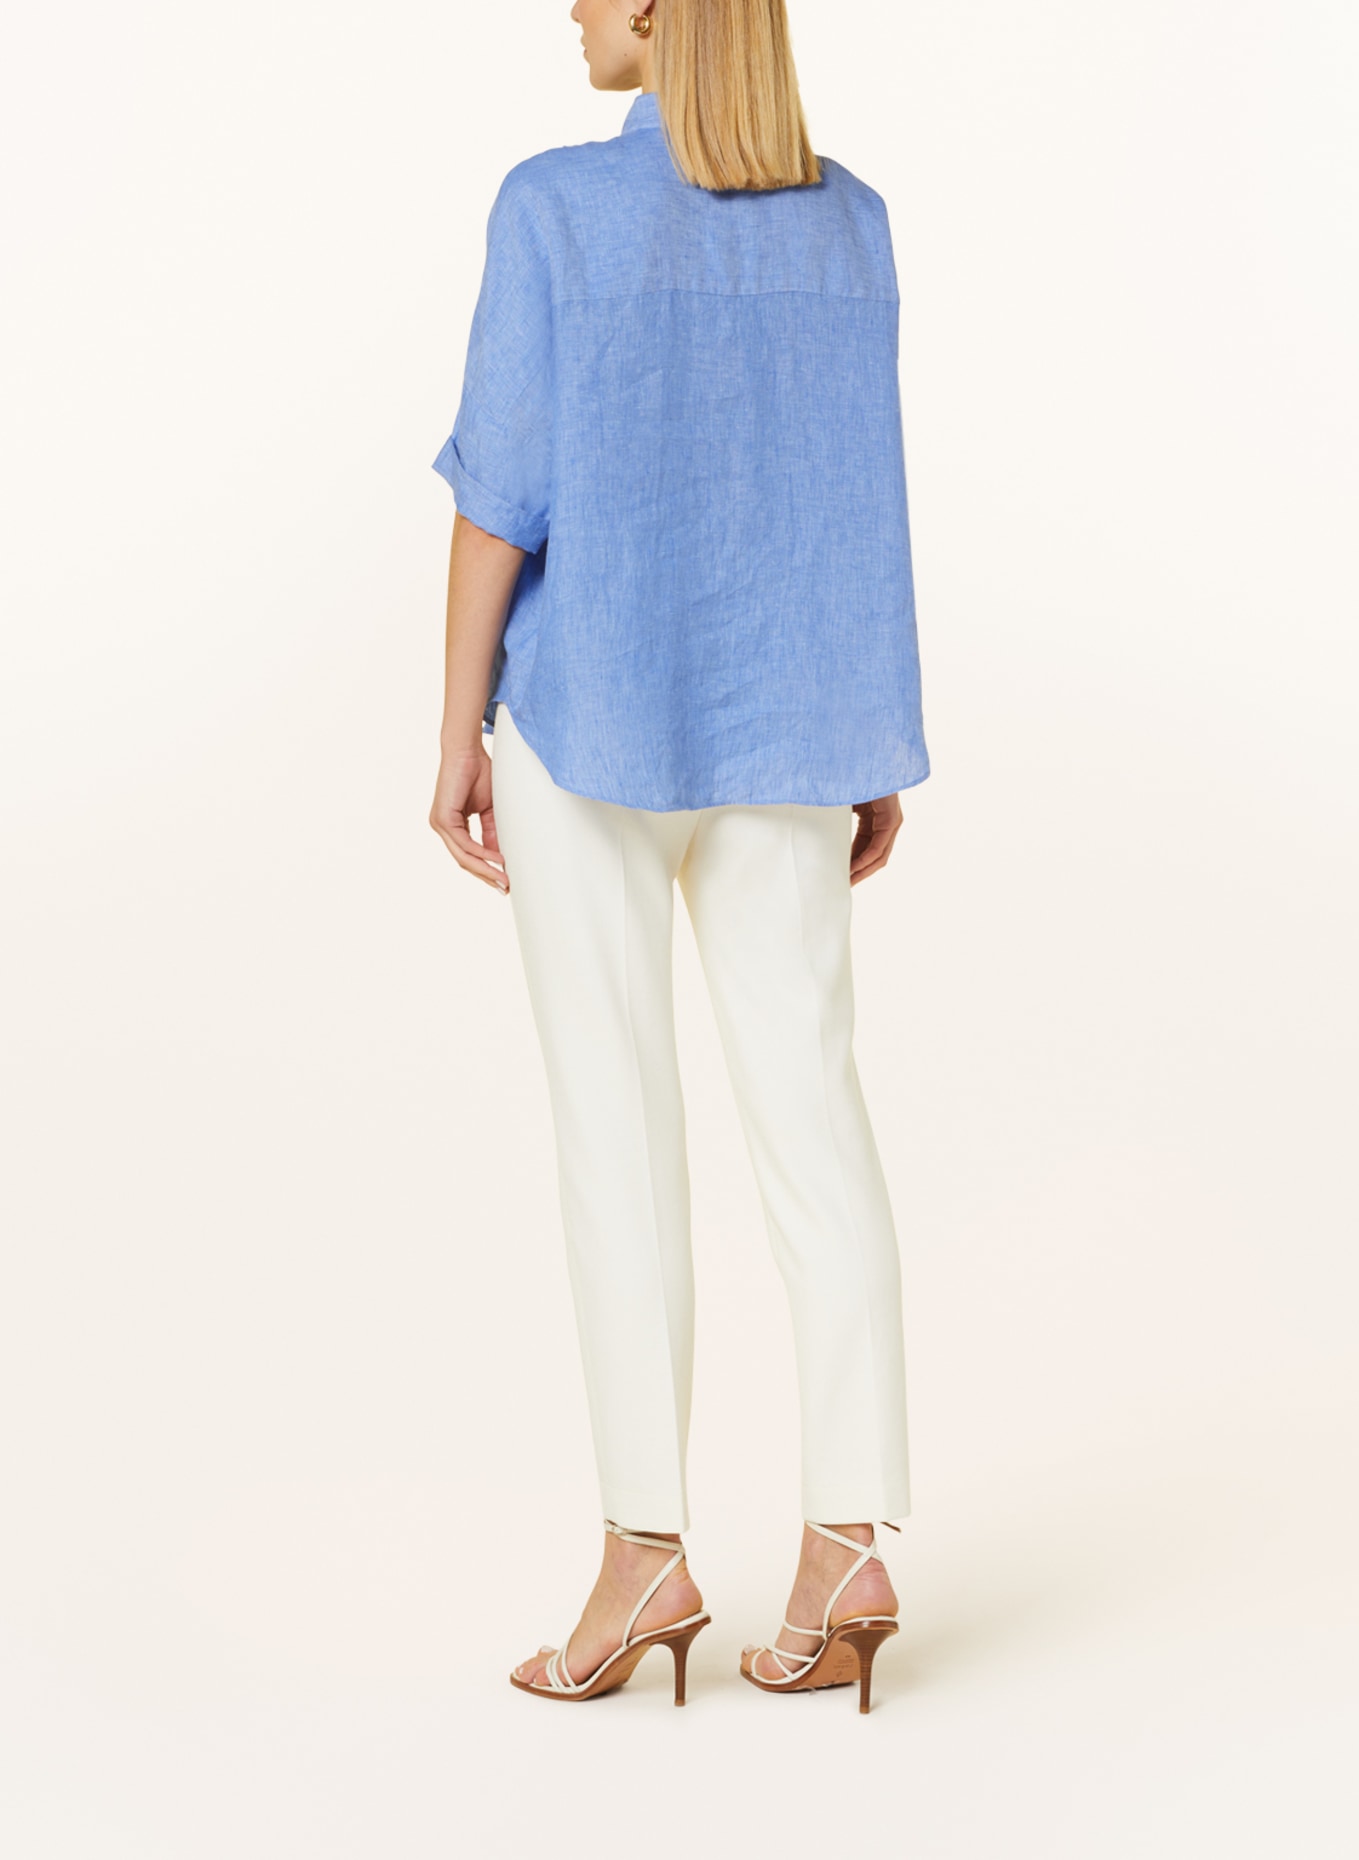 ROBERT FRIEDMAN Shirt blouse BIANCAL made of linen, Color: LIGHT BLUE (Image 3)